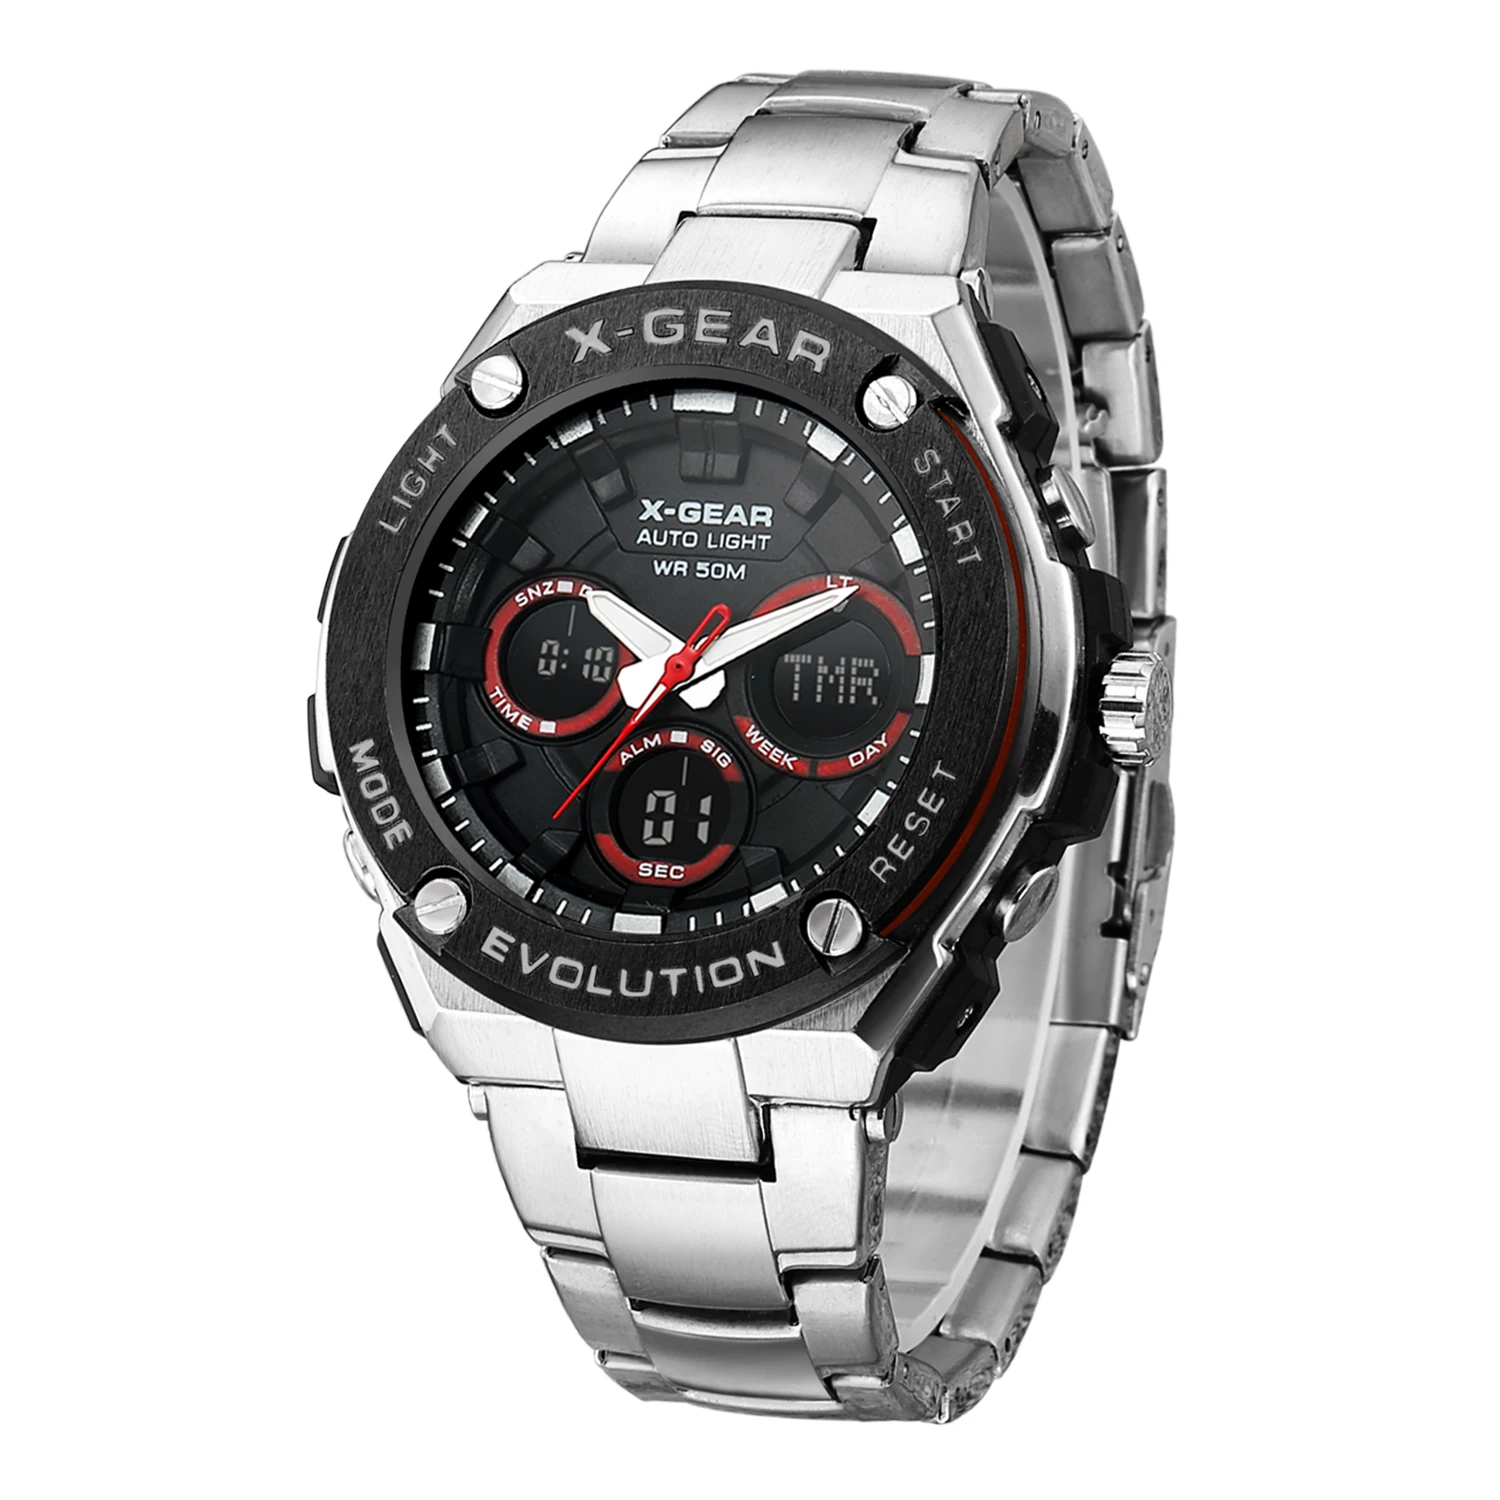 Mężczyzna Mody sportów Zegarek Z podwójnym wyświetlaczem Analogowe Cyfrowe LED Elektroniczny zegarek Kwarcowy Zegarek Wodoodporny Pływackie Zegarek Wojskowy